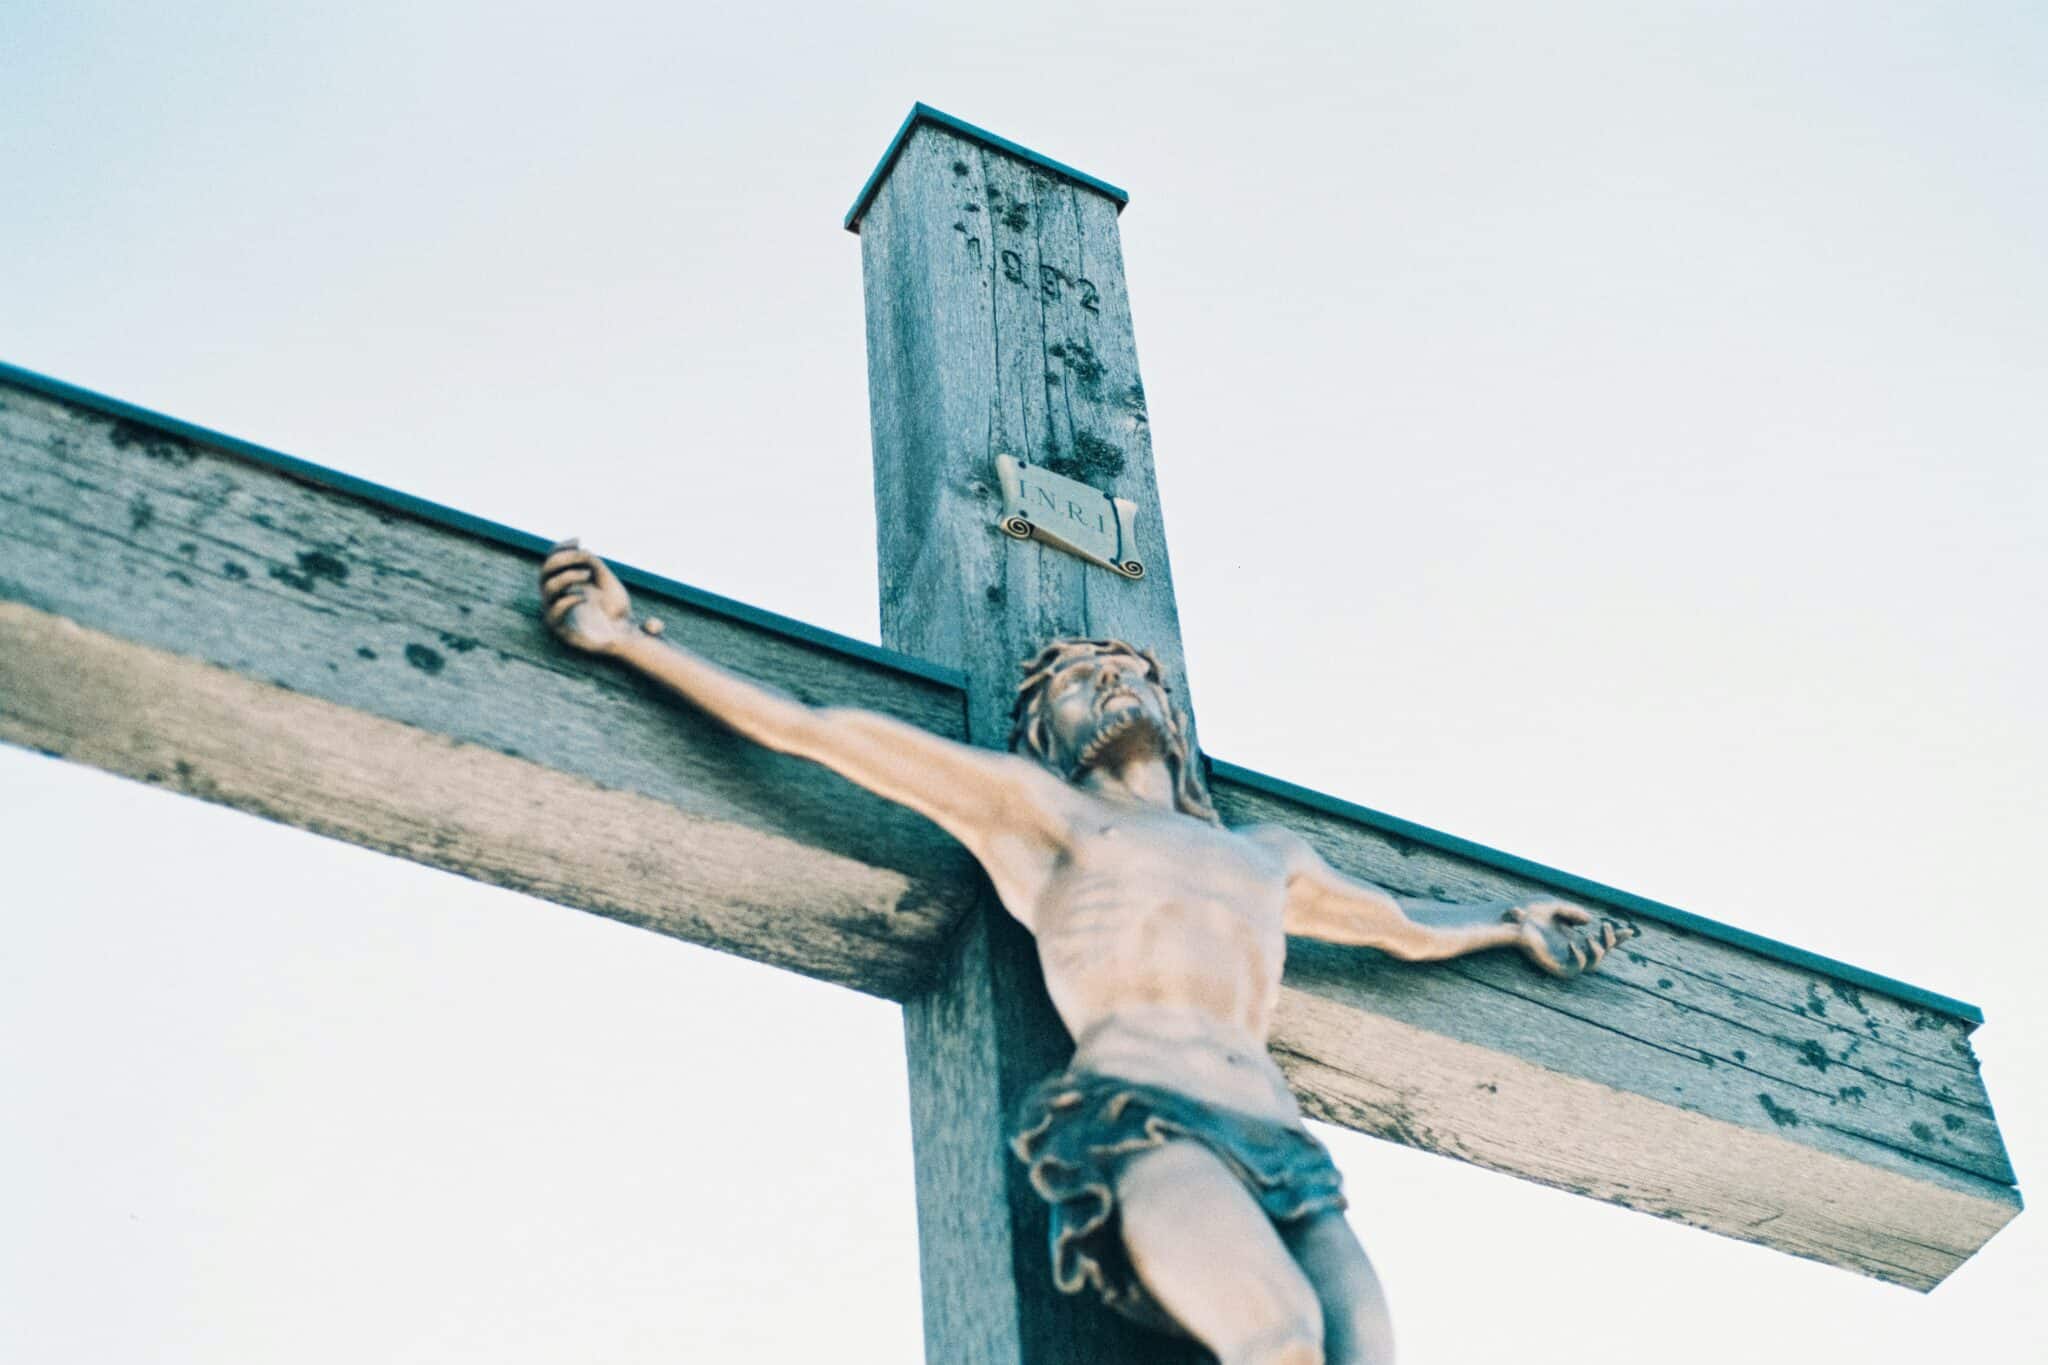 Jesus on a cross | Photo by Christoph Schmid on Unsplash